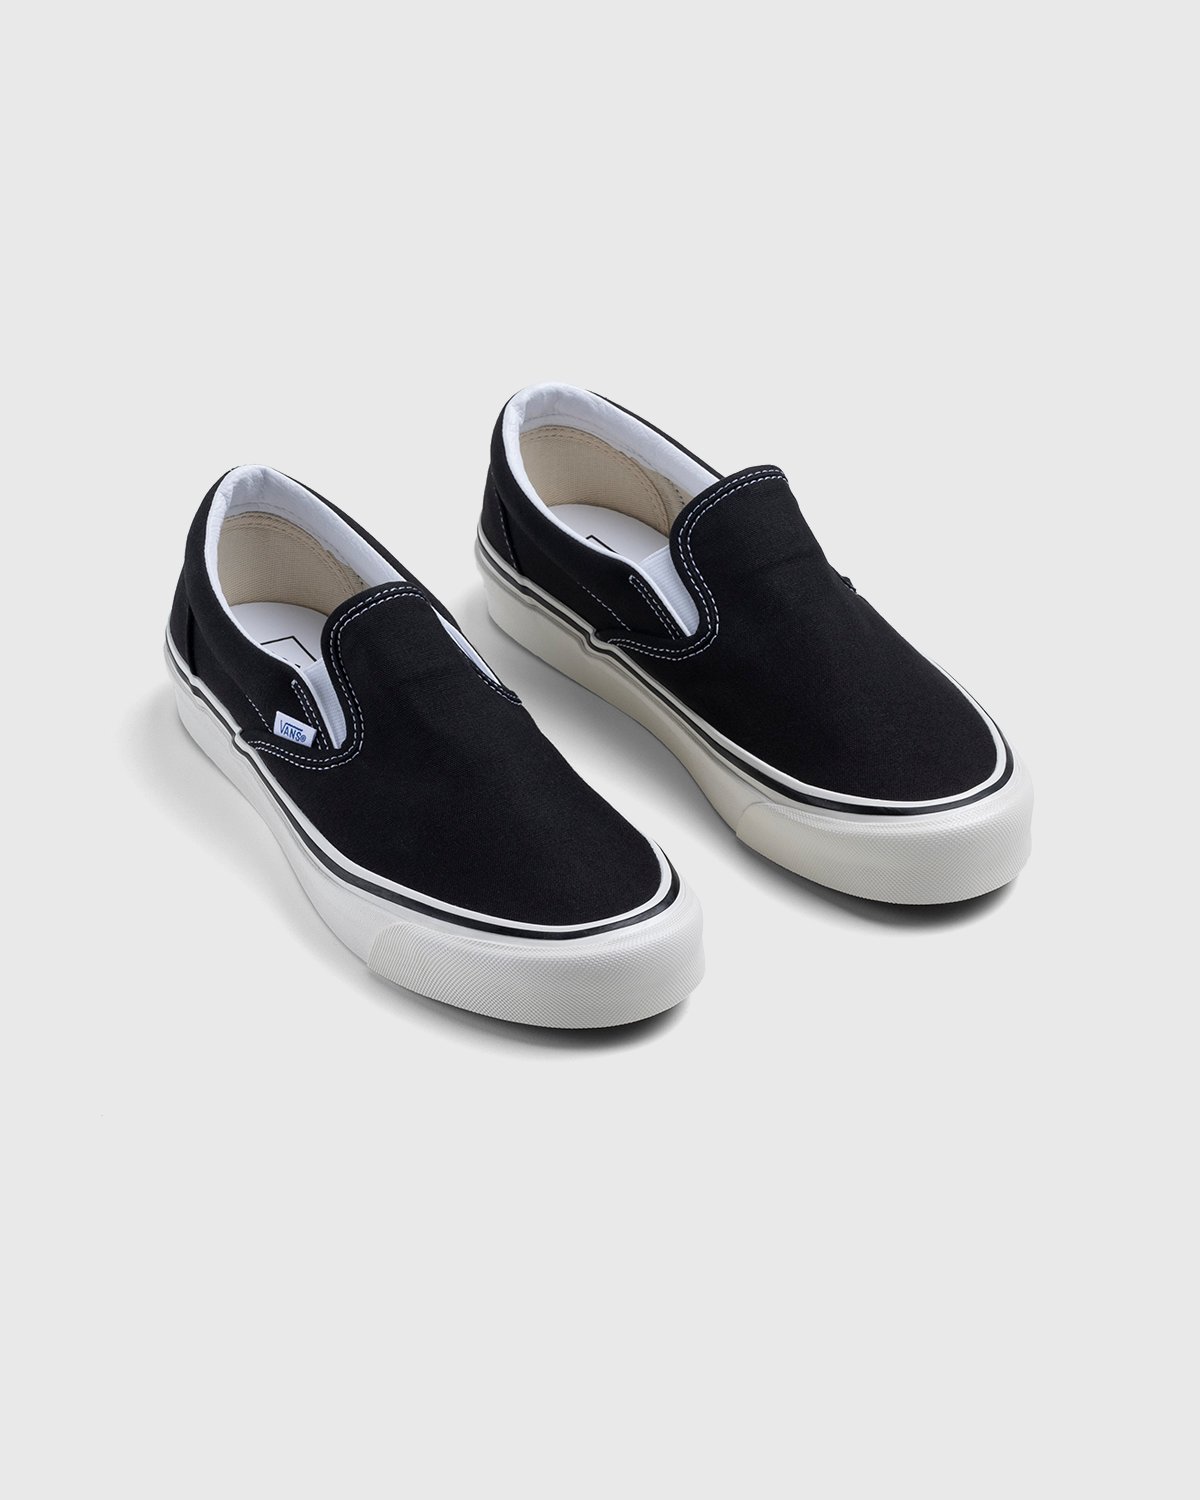 Vans - Anaheim Factory Classic Slip-On 98 DX OG Black - Footwear - Black - Image 3